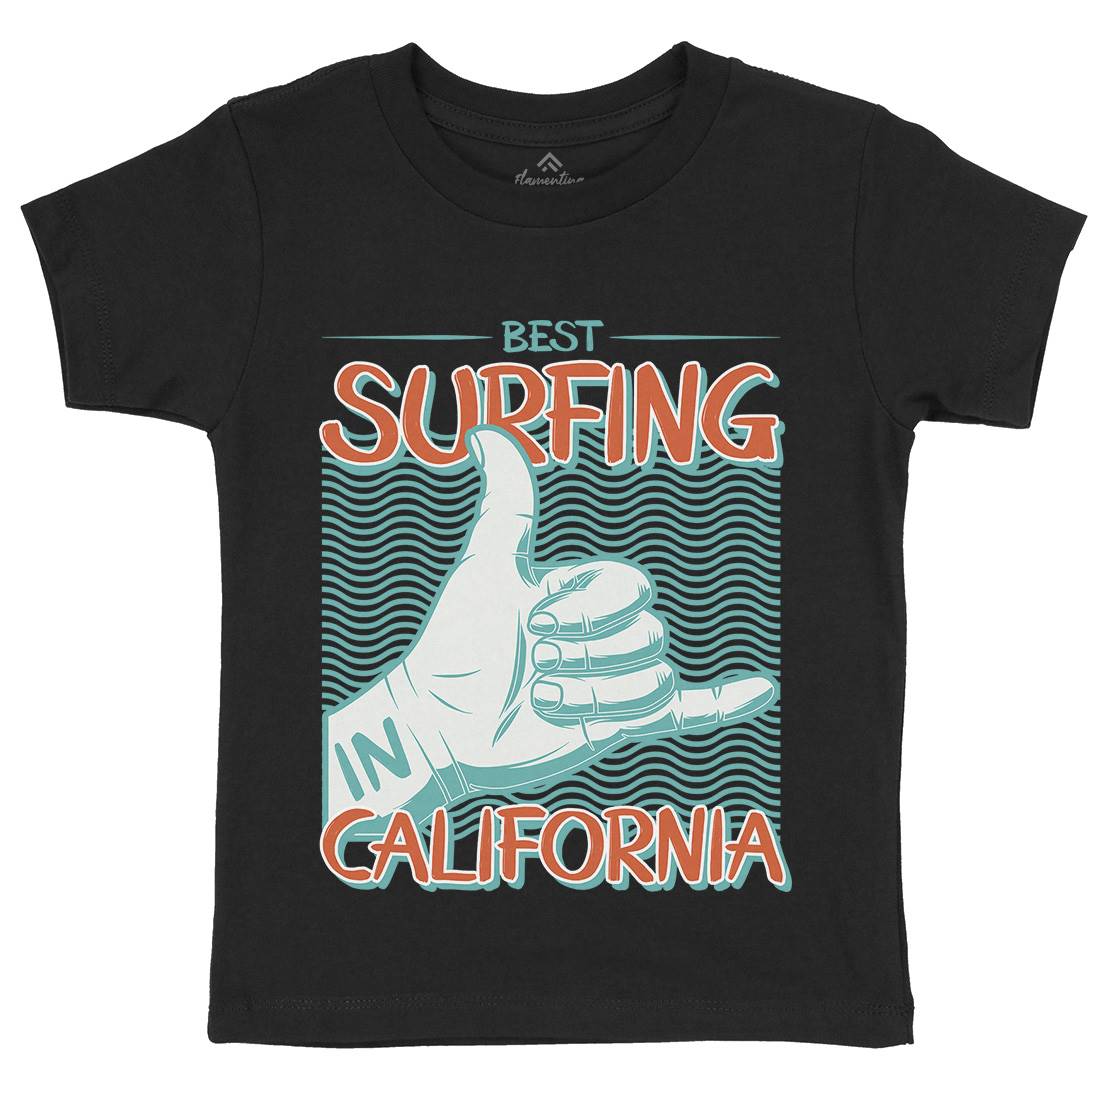 Best Surfing Kids Crew Neck T-Shirt Surf D908